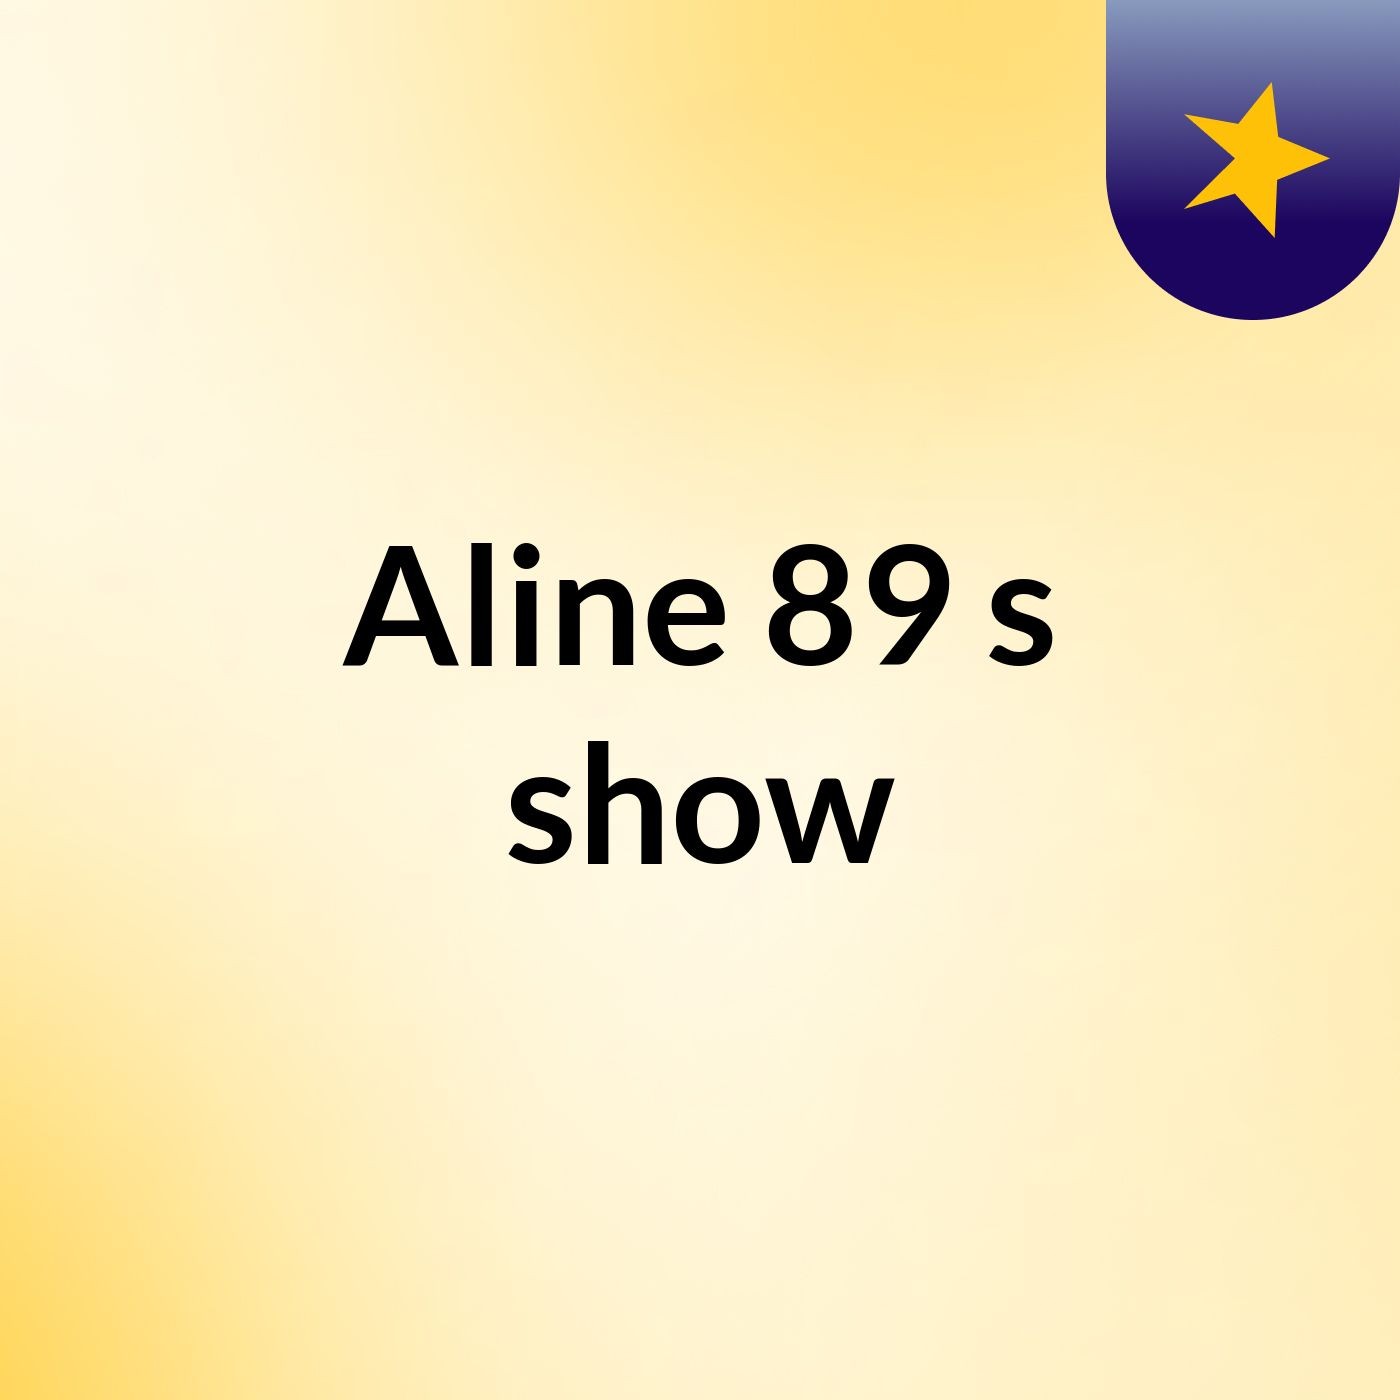 Aline 89's show